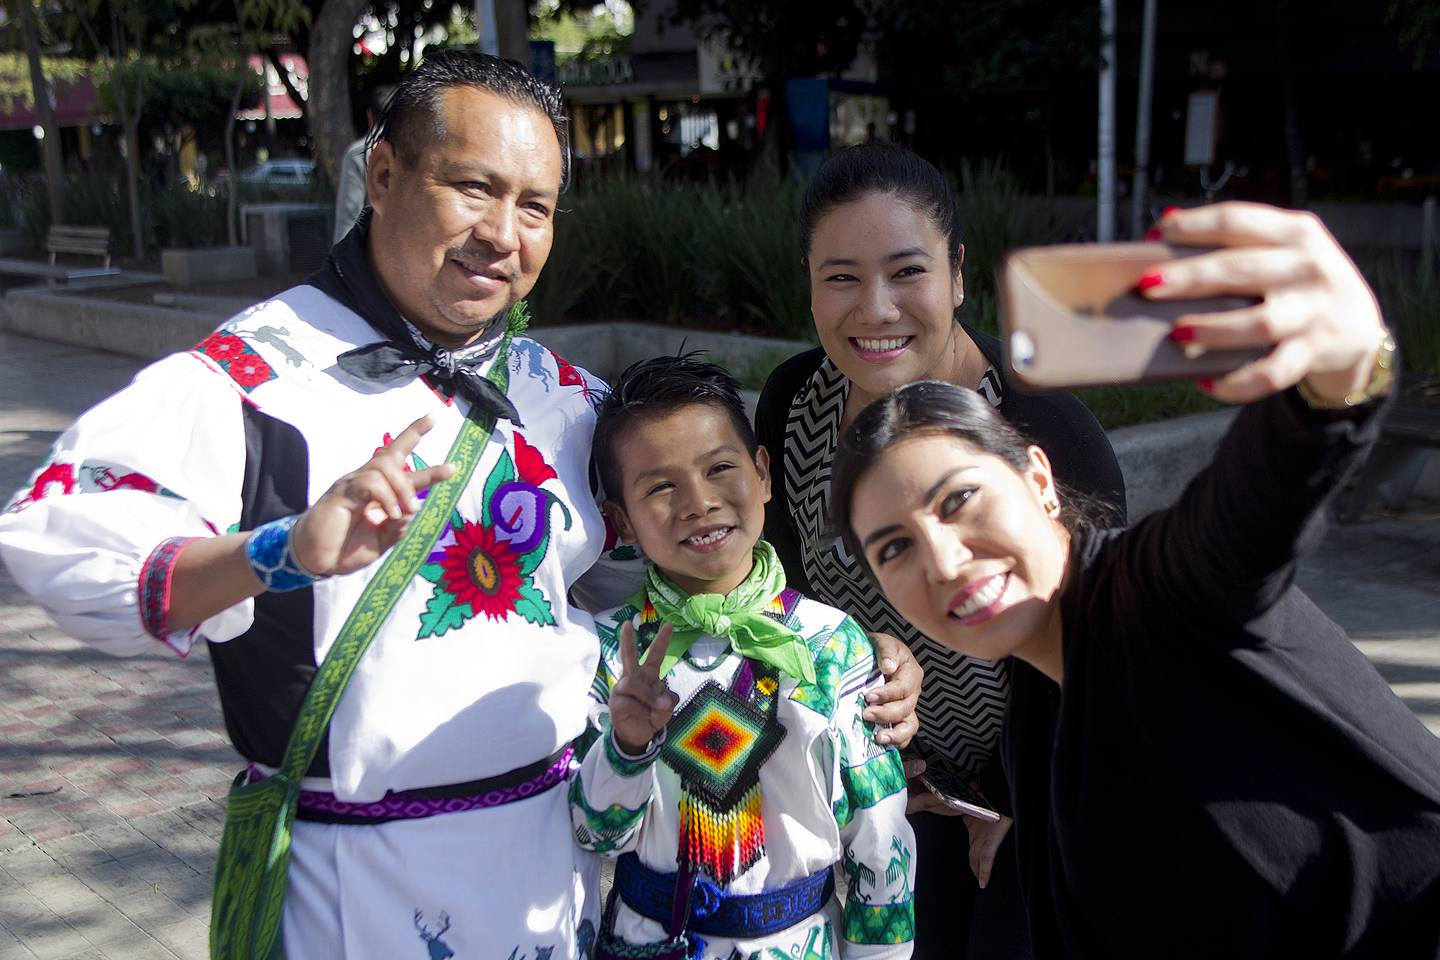 Fotografía de archivo fechada el 18 de enero de 2018 que muestra al niño Yuawi López  y su padre, José López, mientras posan para fotos junto a seguidoras en la ciudad de Guadalajara